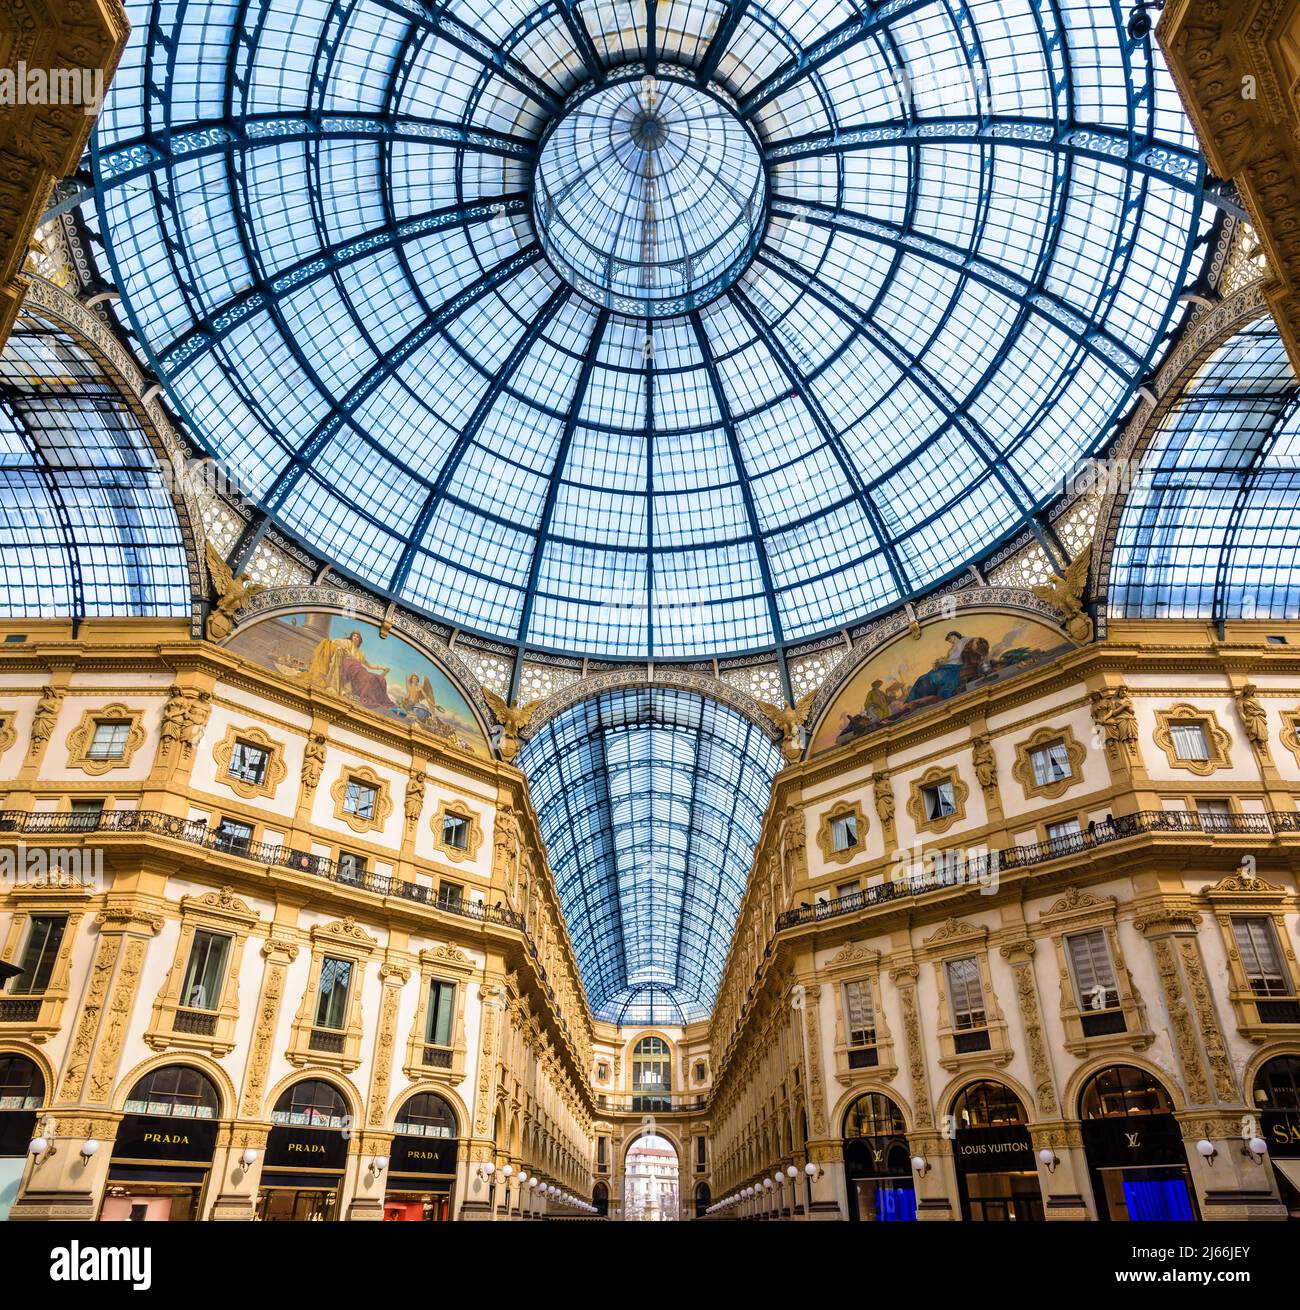 Cúpula de cristal en el centro comercial acristalado Galleria Vittorio Emanuele II en Milán, Italia. Foto de stock